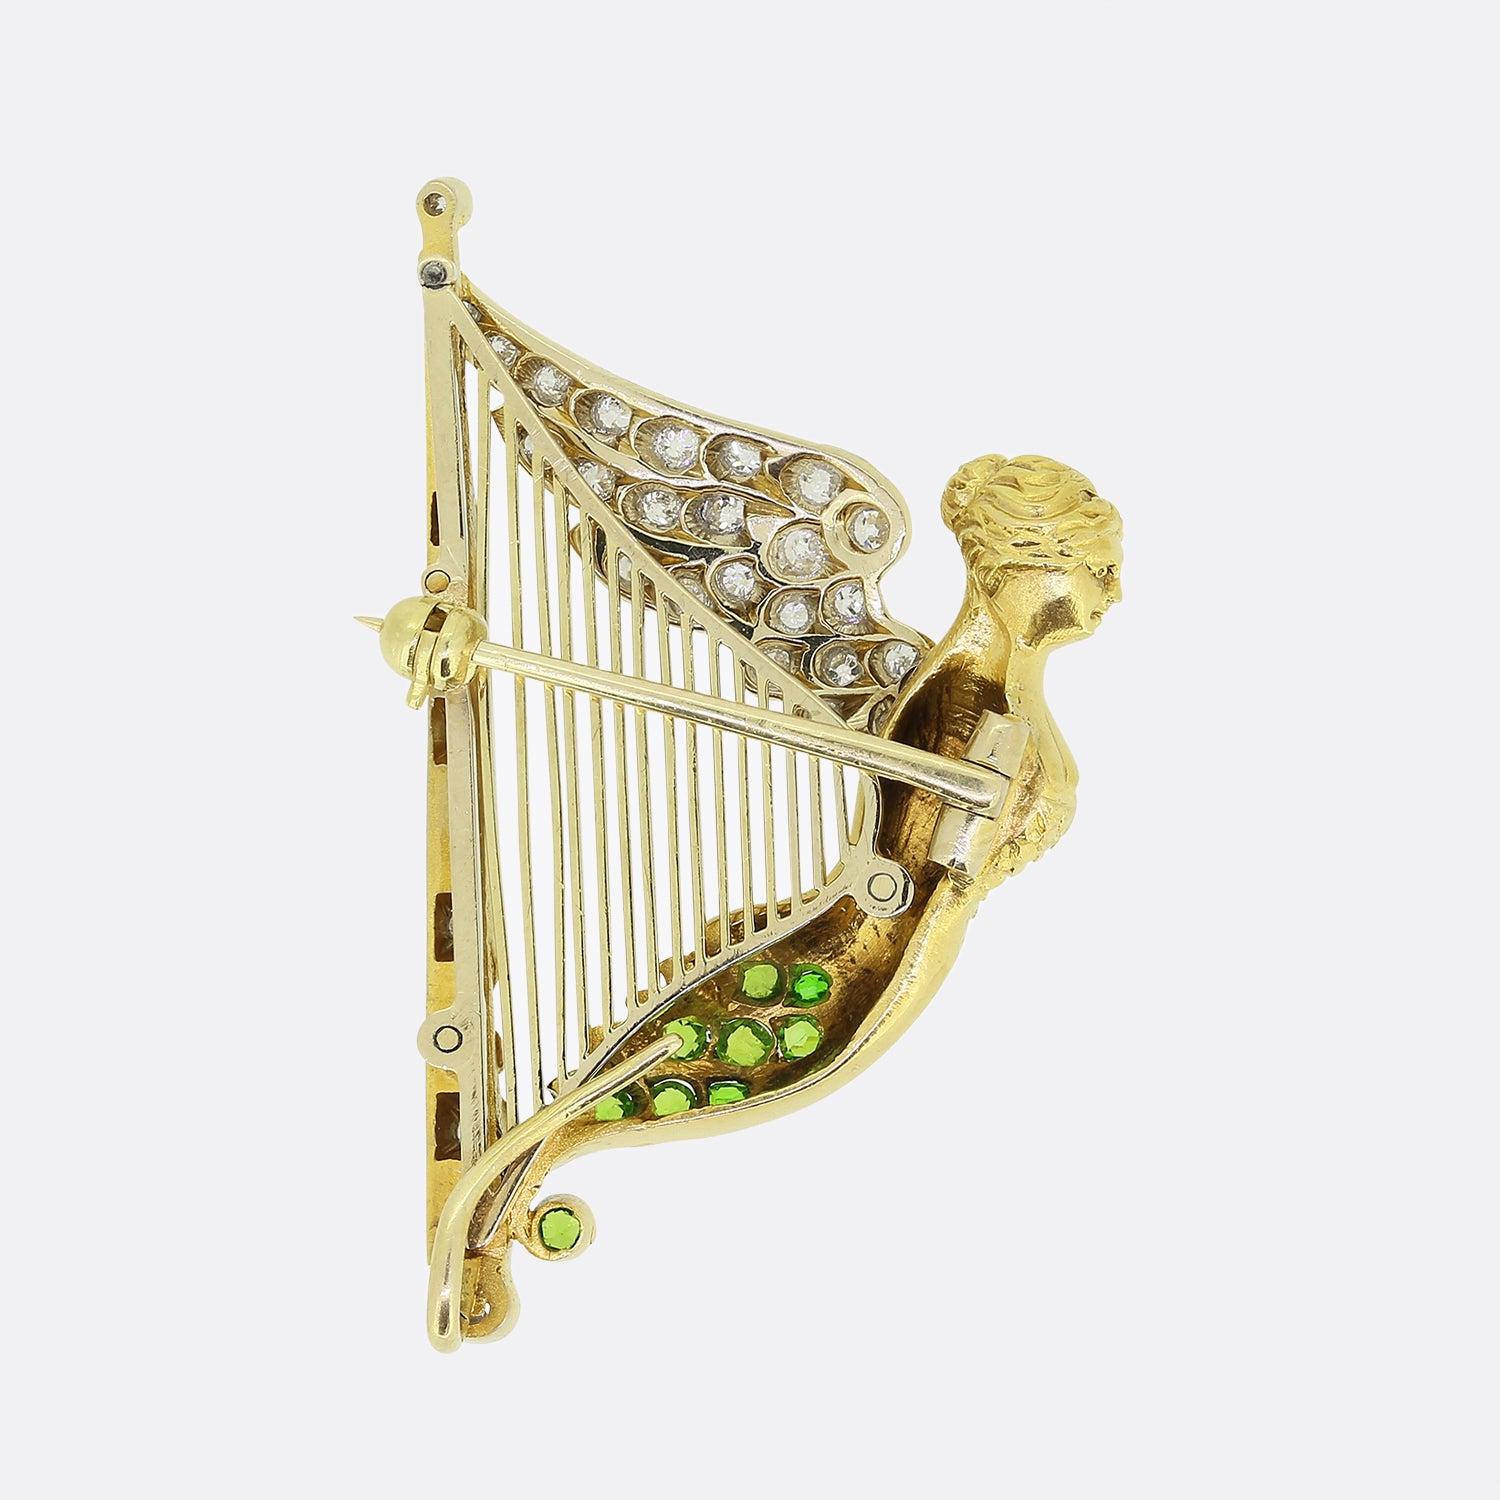 Hier haben wir eine wunderbare, einzigartige Brosche aus der viktorianischen Zeit. Dieses antike Stück wurde aus 15 Karat Gelbgold in Form einer Harfe gefertigt. Ein weiblicher Engel stellt den Resonanzkörper dieses romantischen Musikinstruments